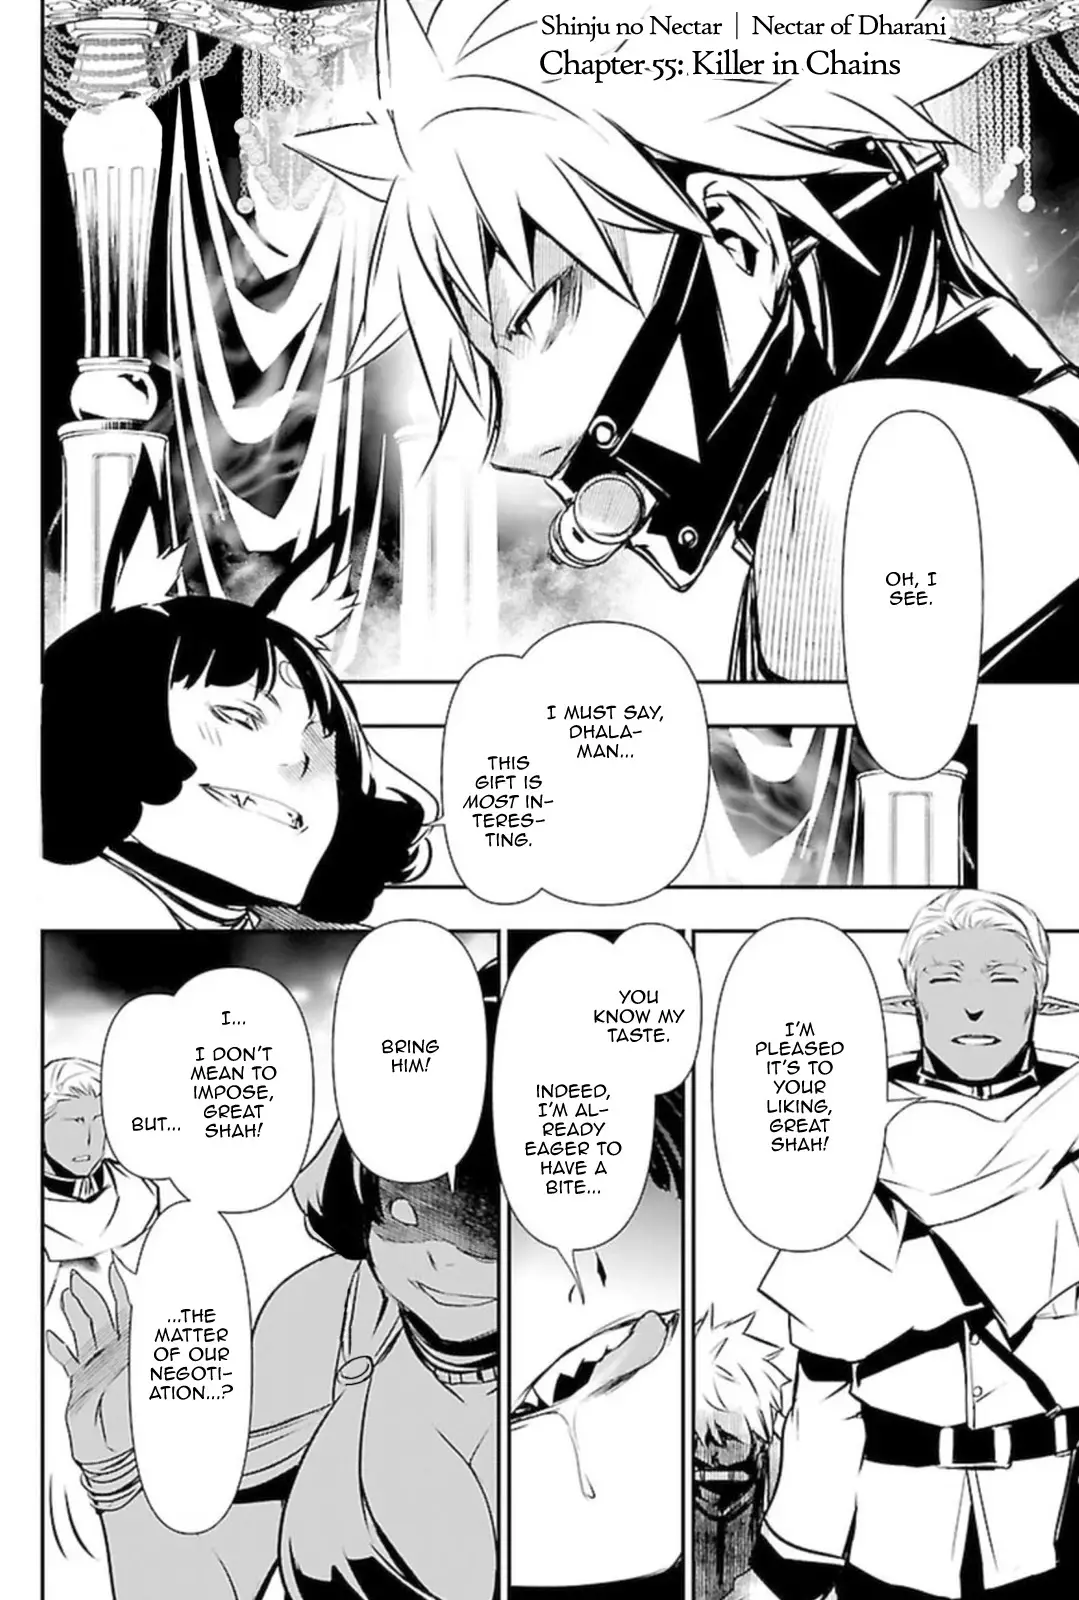 Shinju no Nectar - 55 page 1